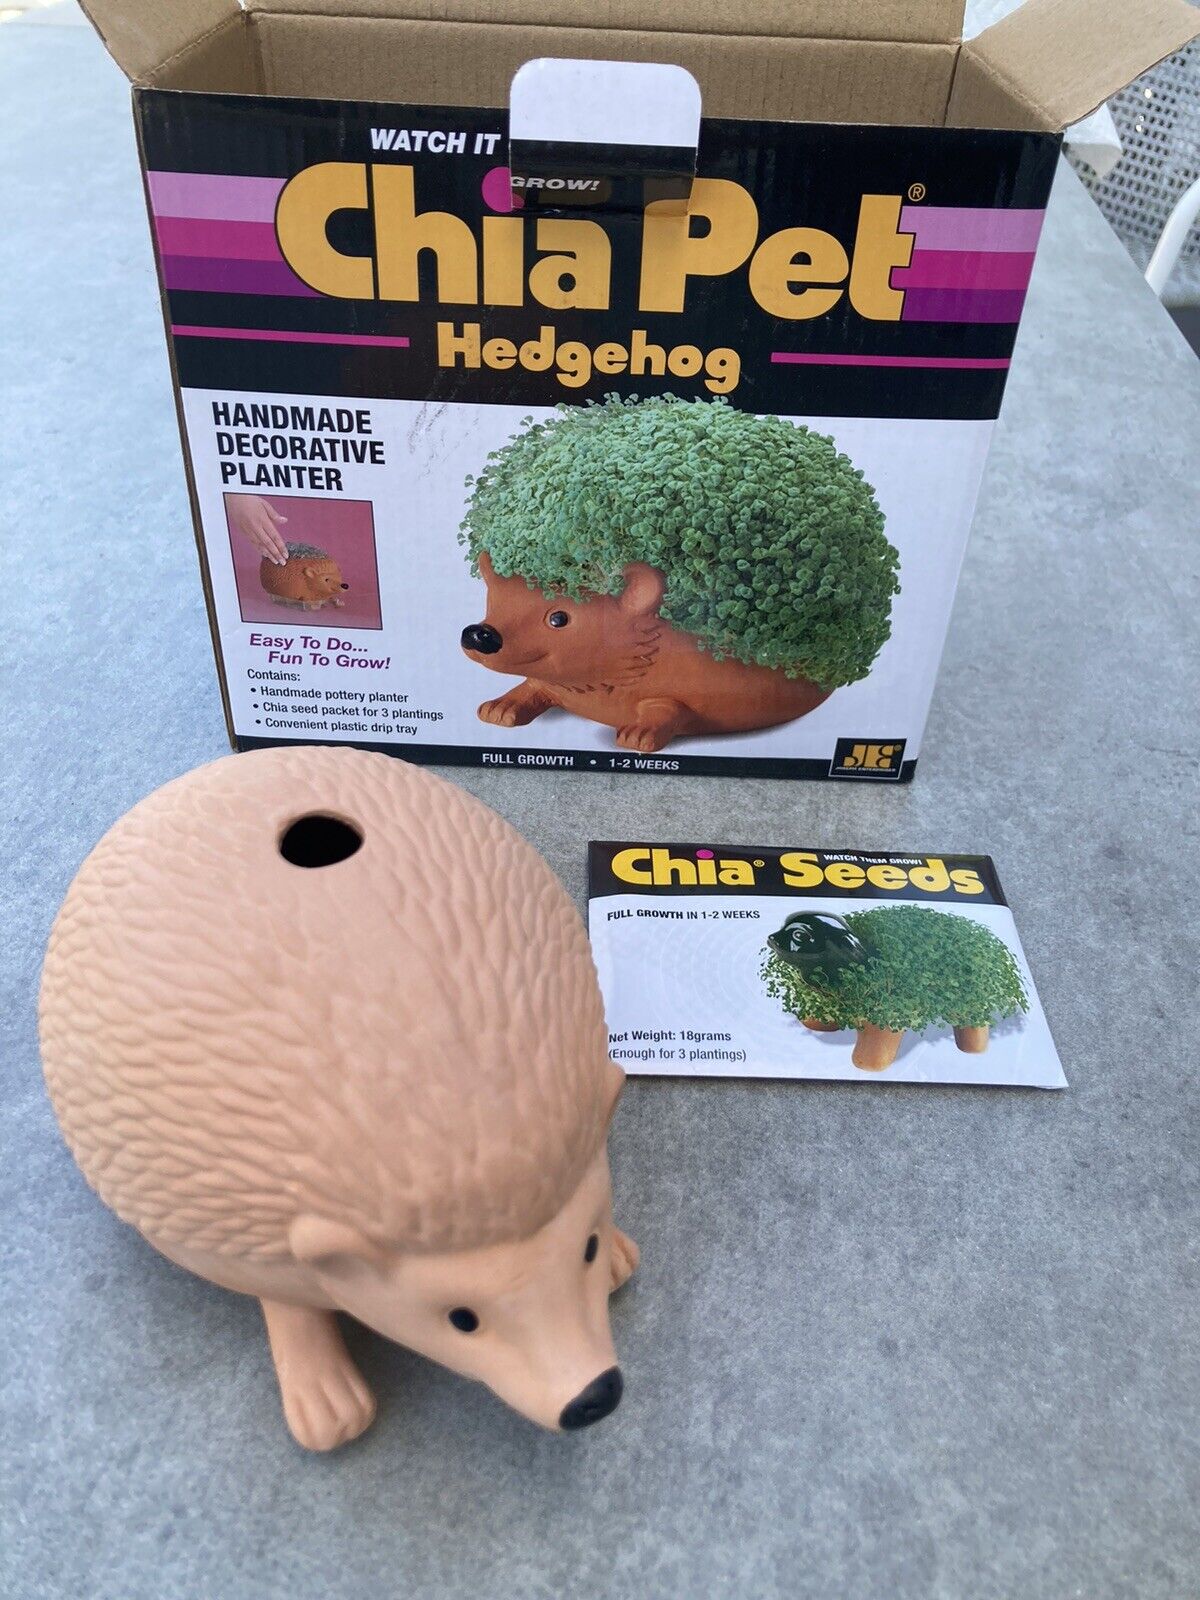 New Chia Pet Hedgehog - Handmade Decorative Planter - Fun to Grow